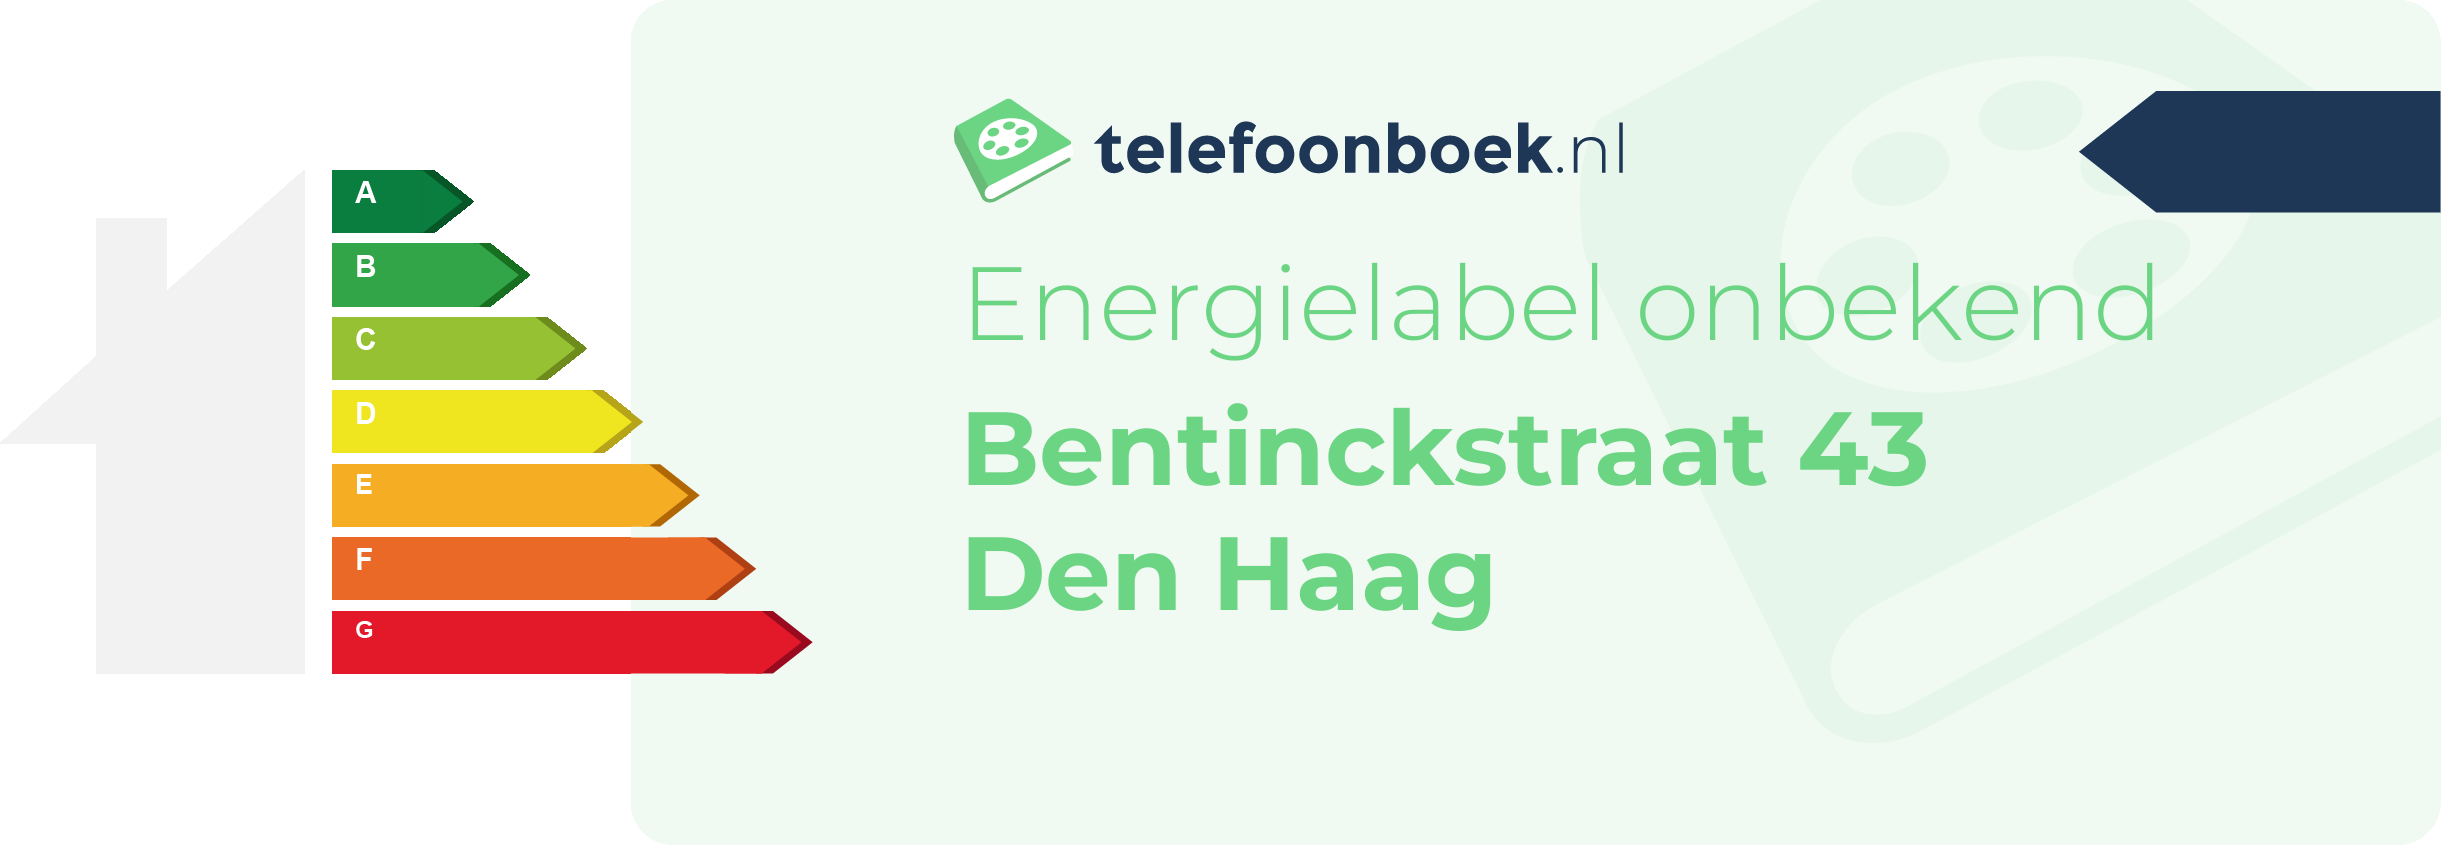 Energielabel Bentinckstraat 43 Den Haag